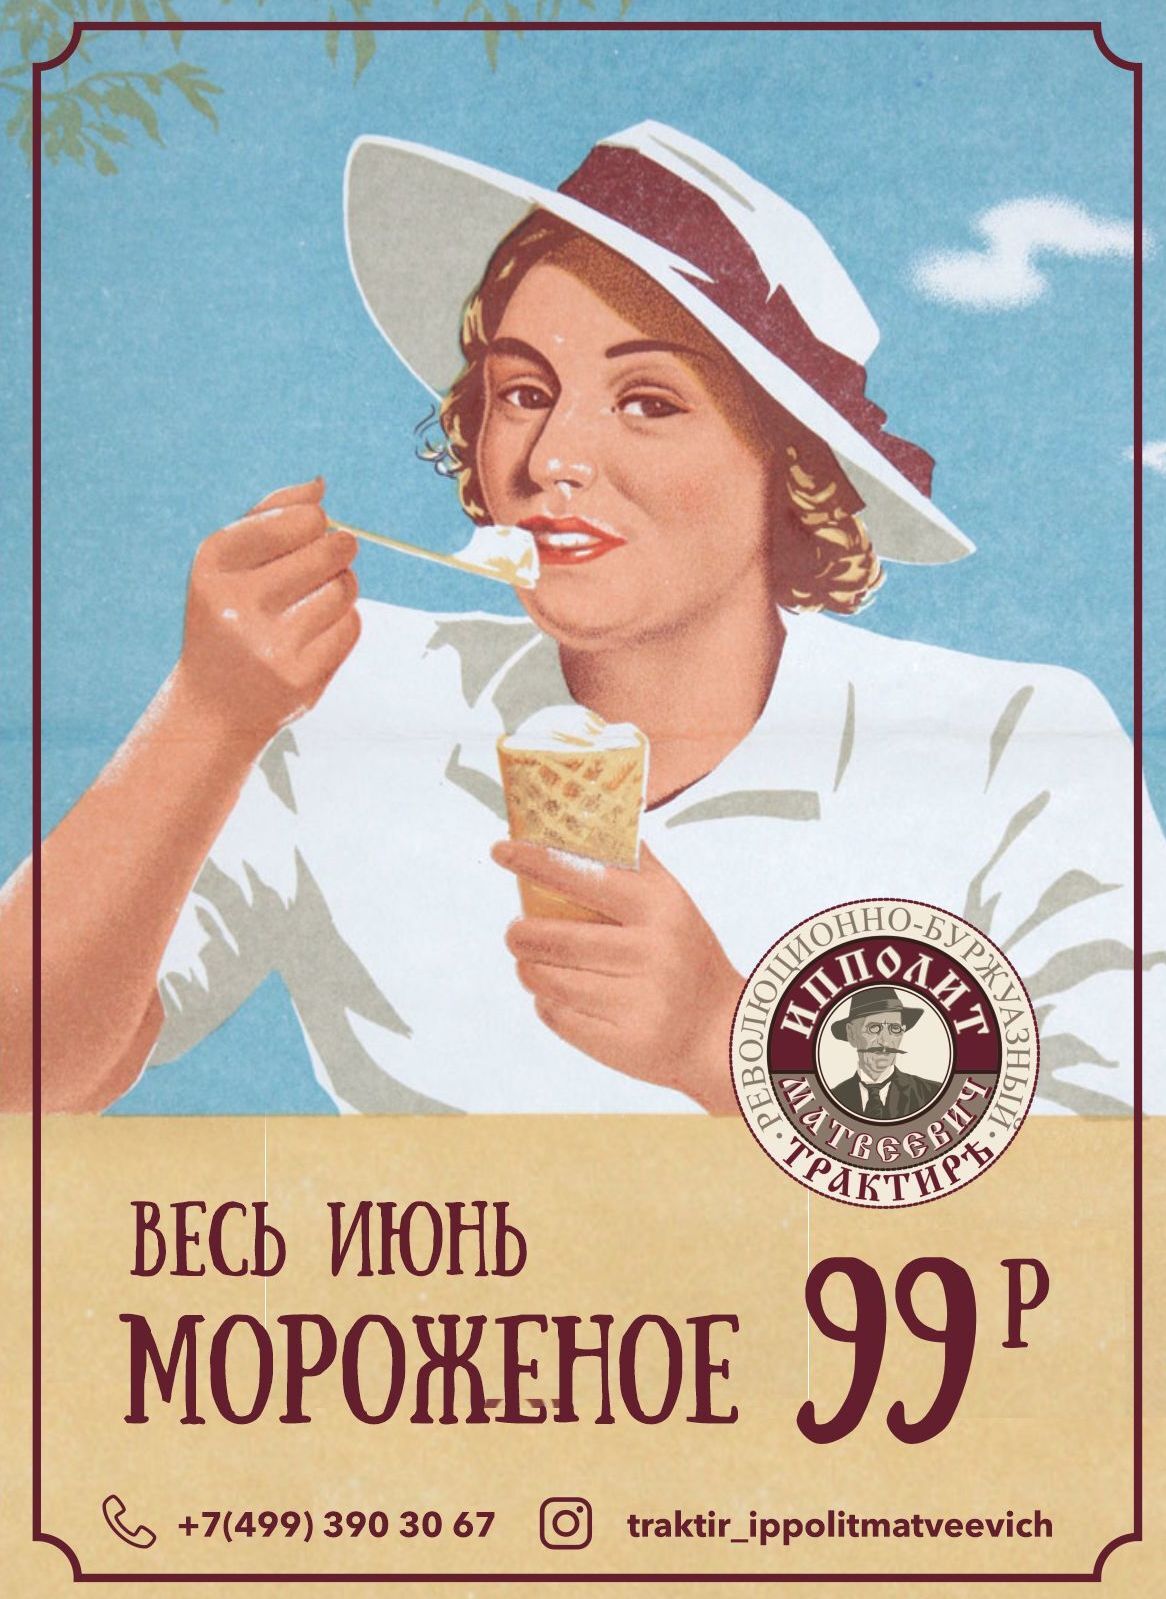 Весь июнь в кафе "Ипполит Матвеевич" фирменное мороженое -99р